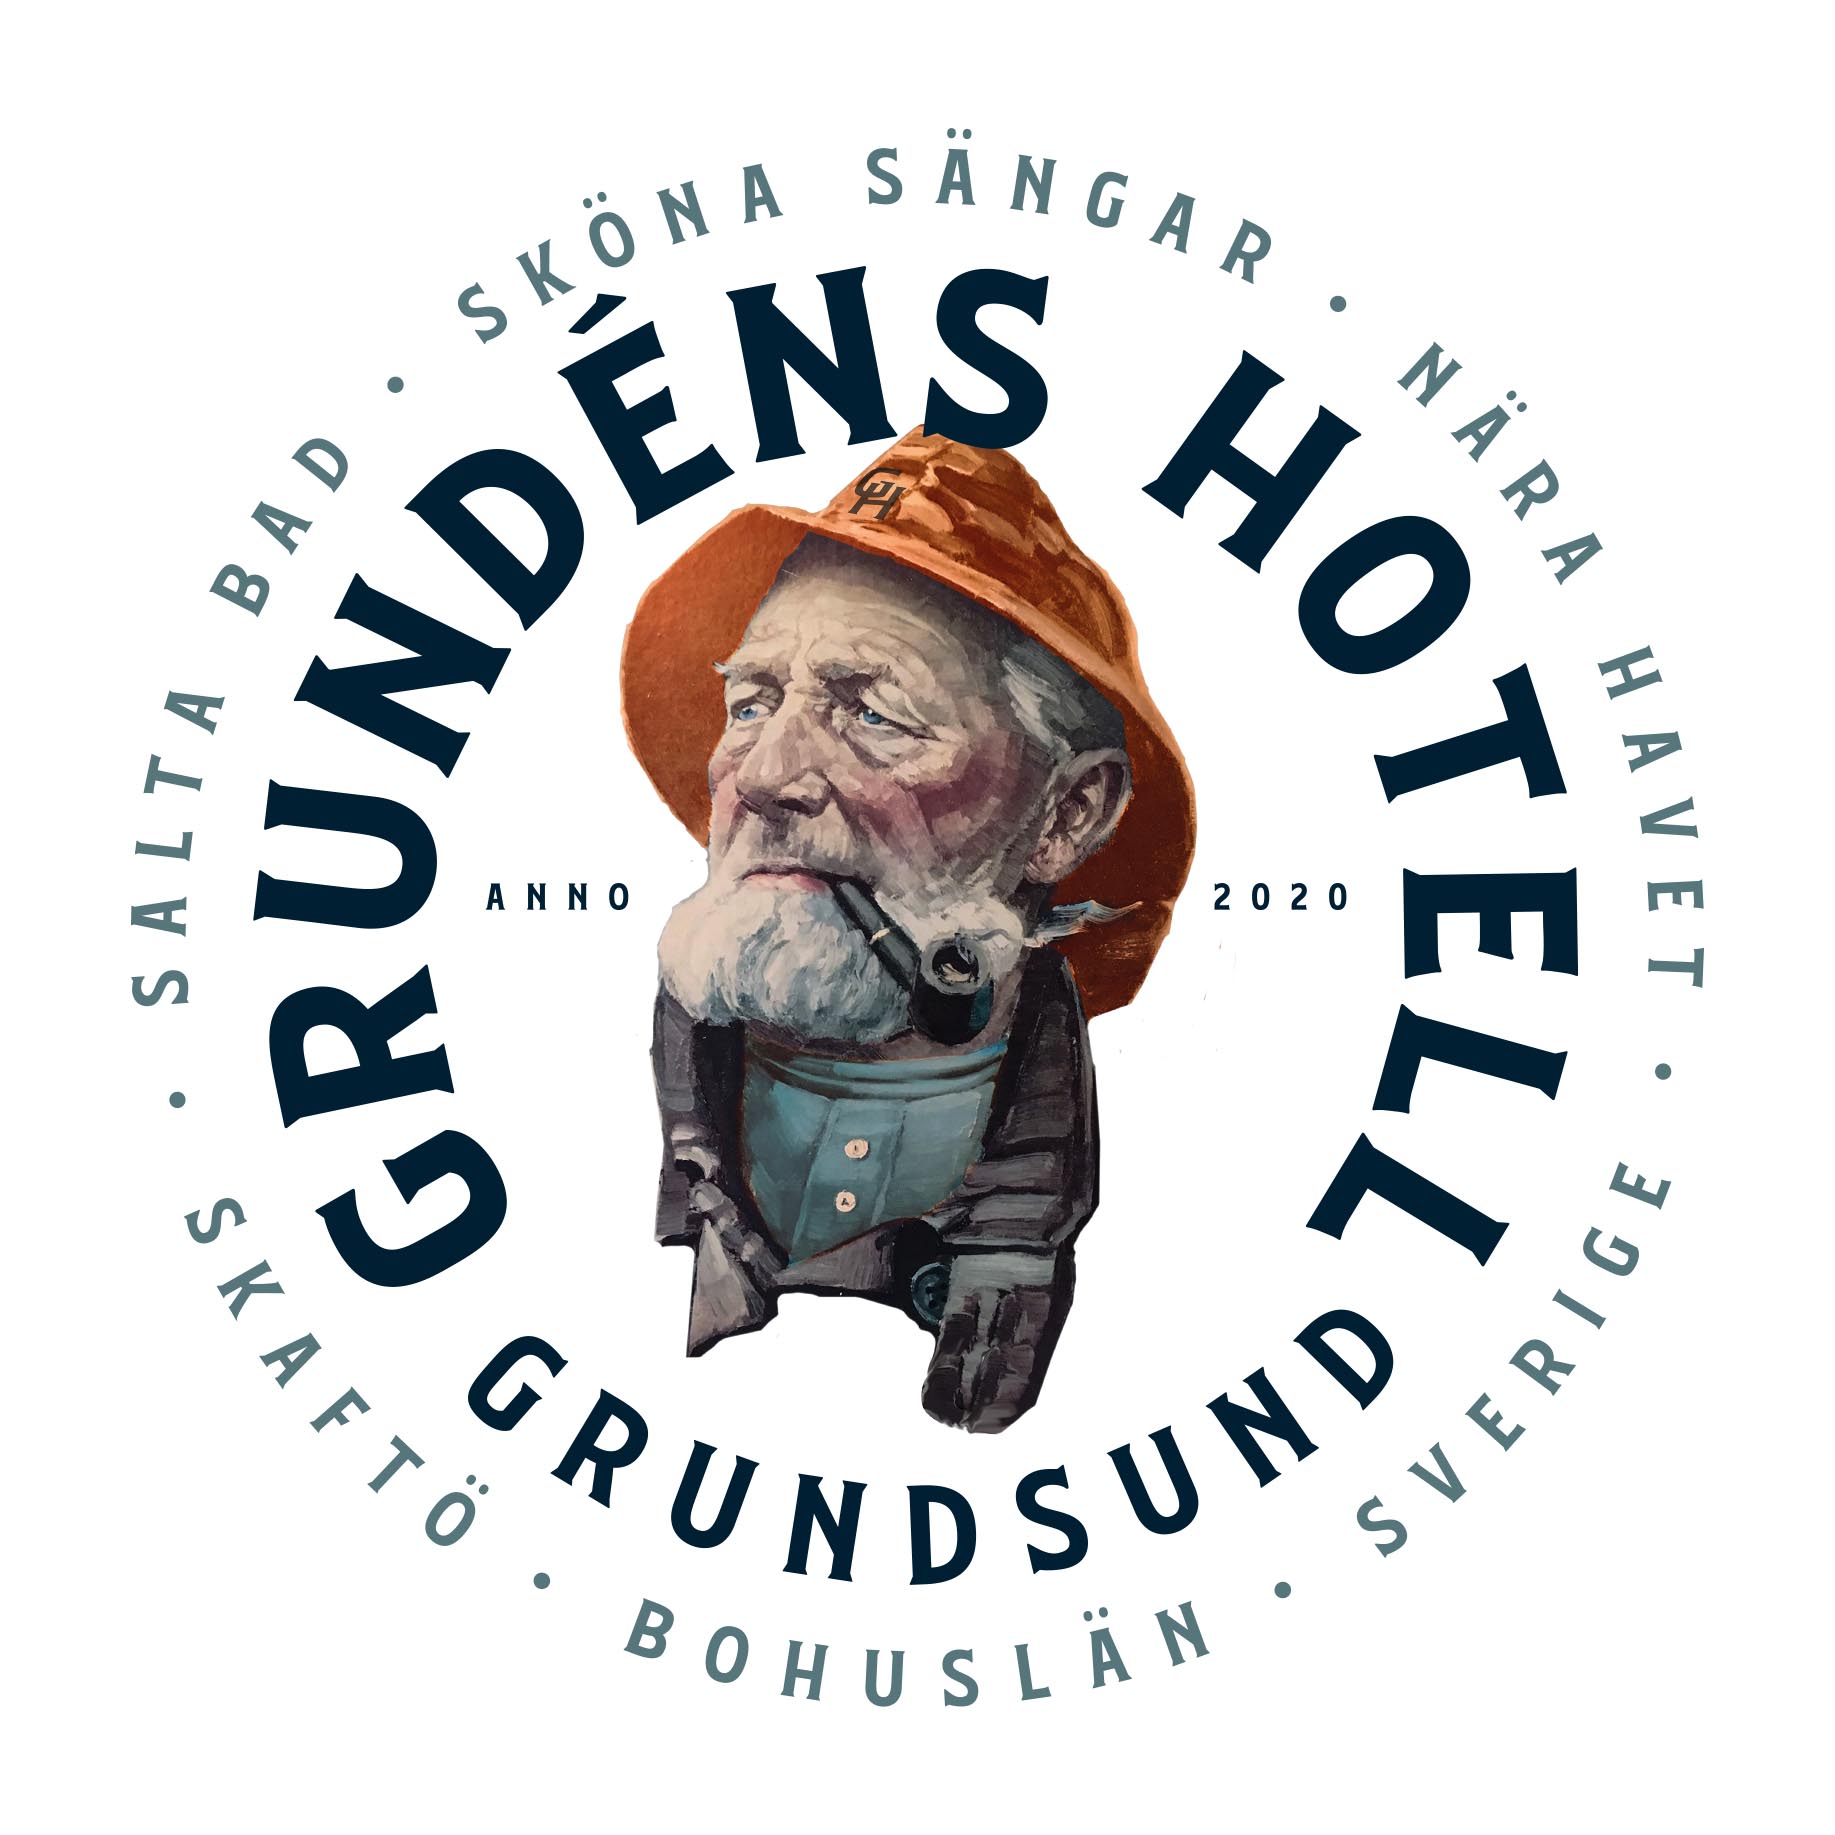 Grundéns Hotell